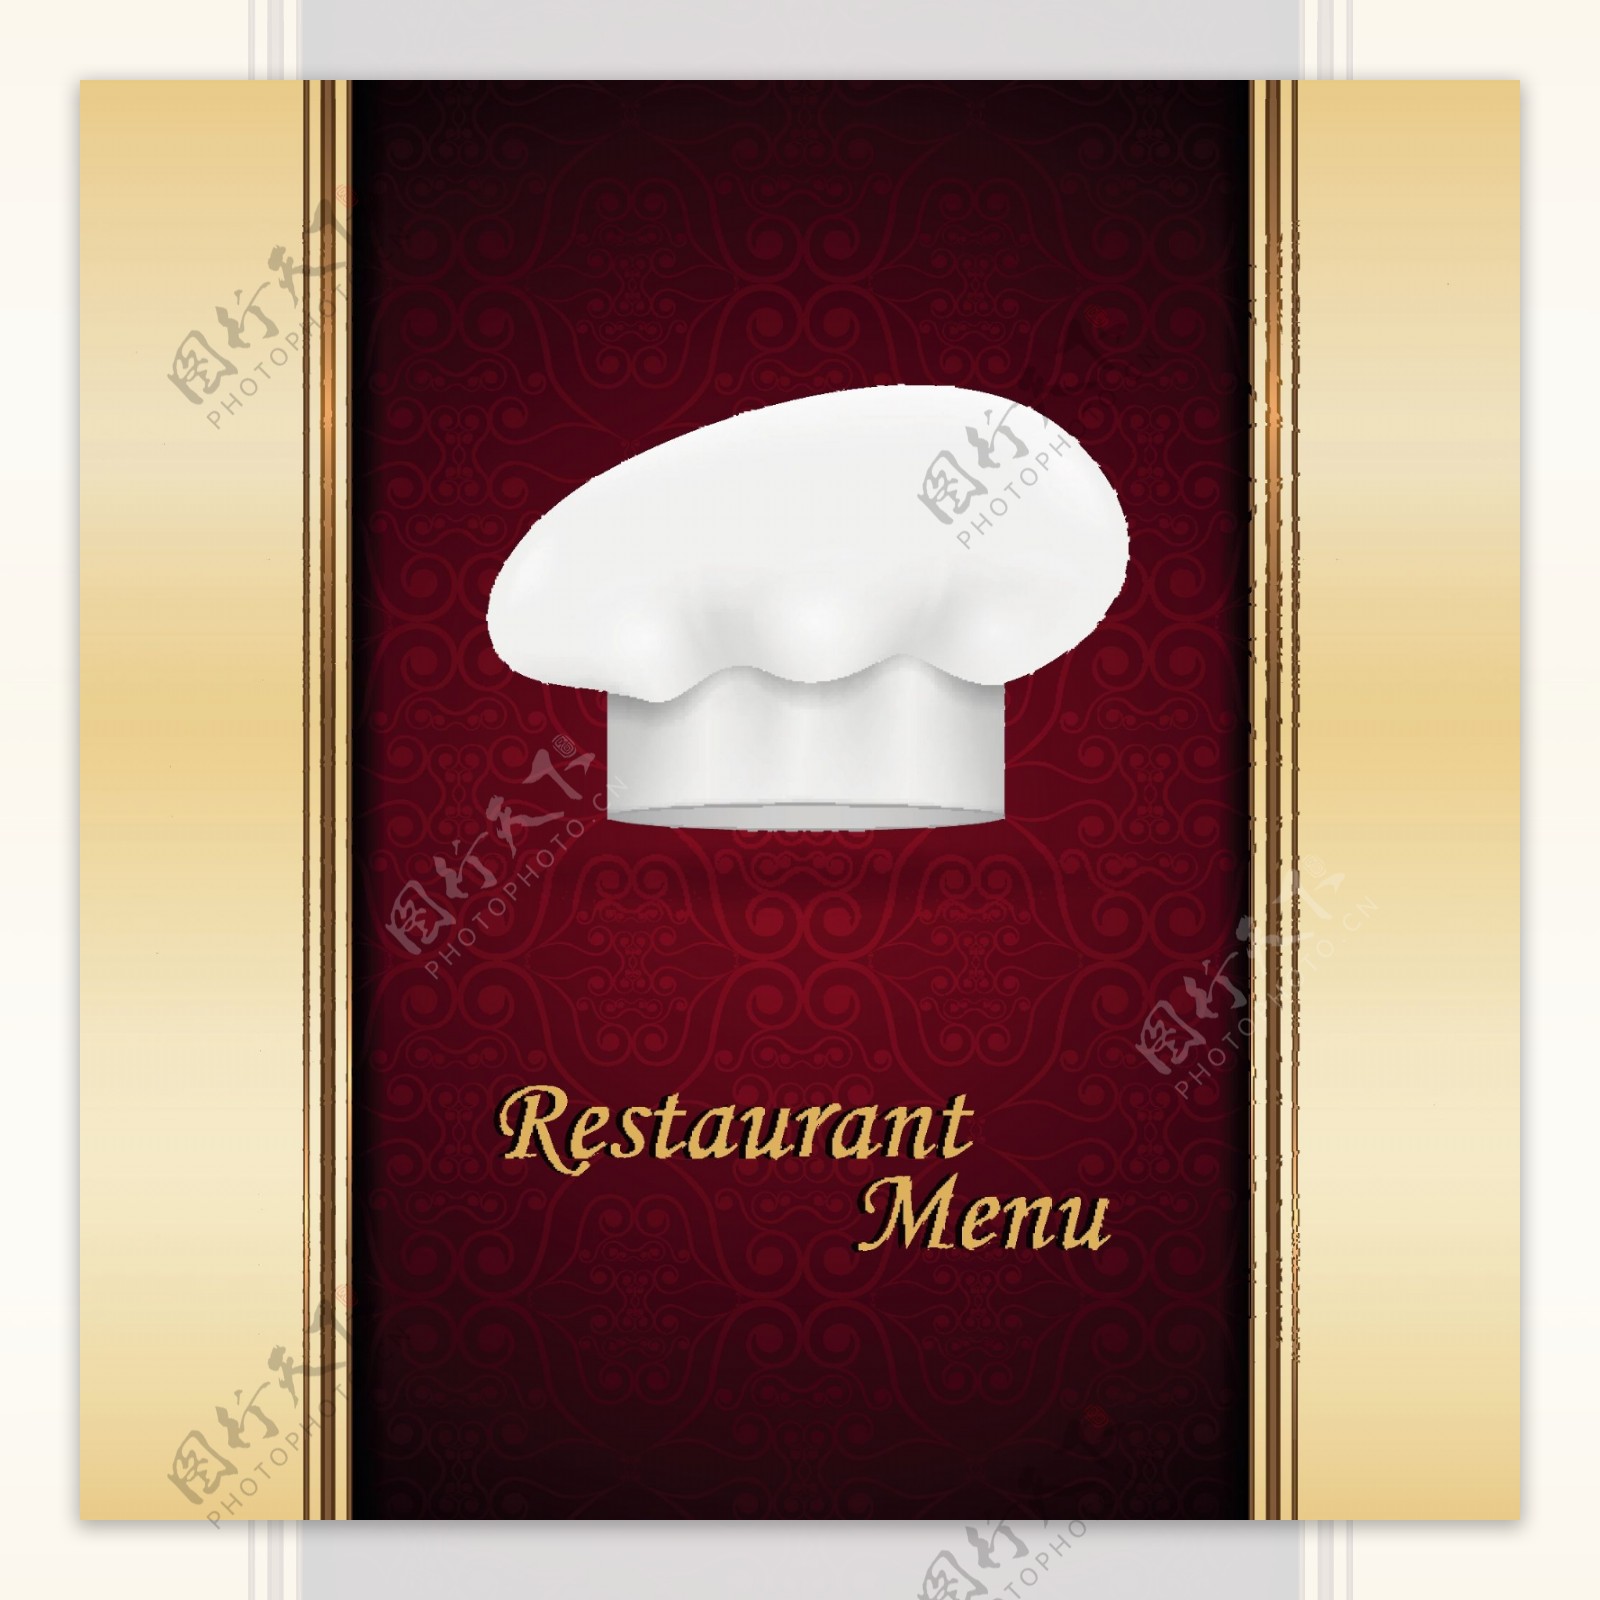 厨师的帽子和餐馆的菜单封面设计矢量图05